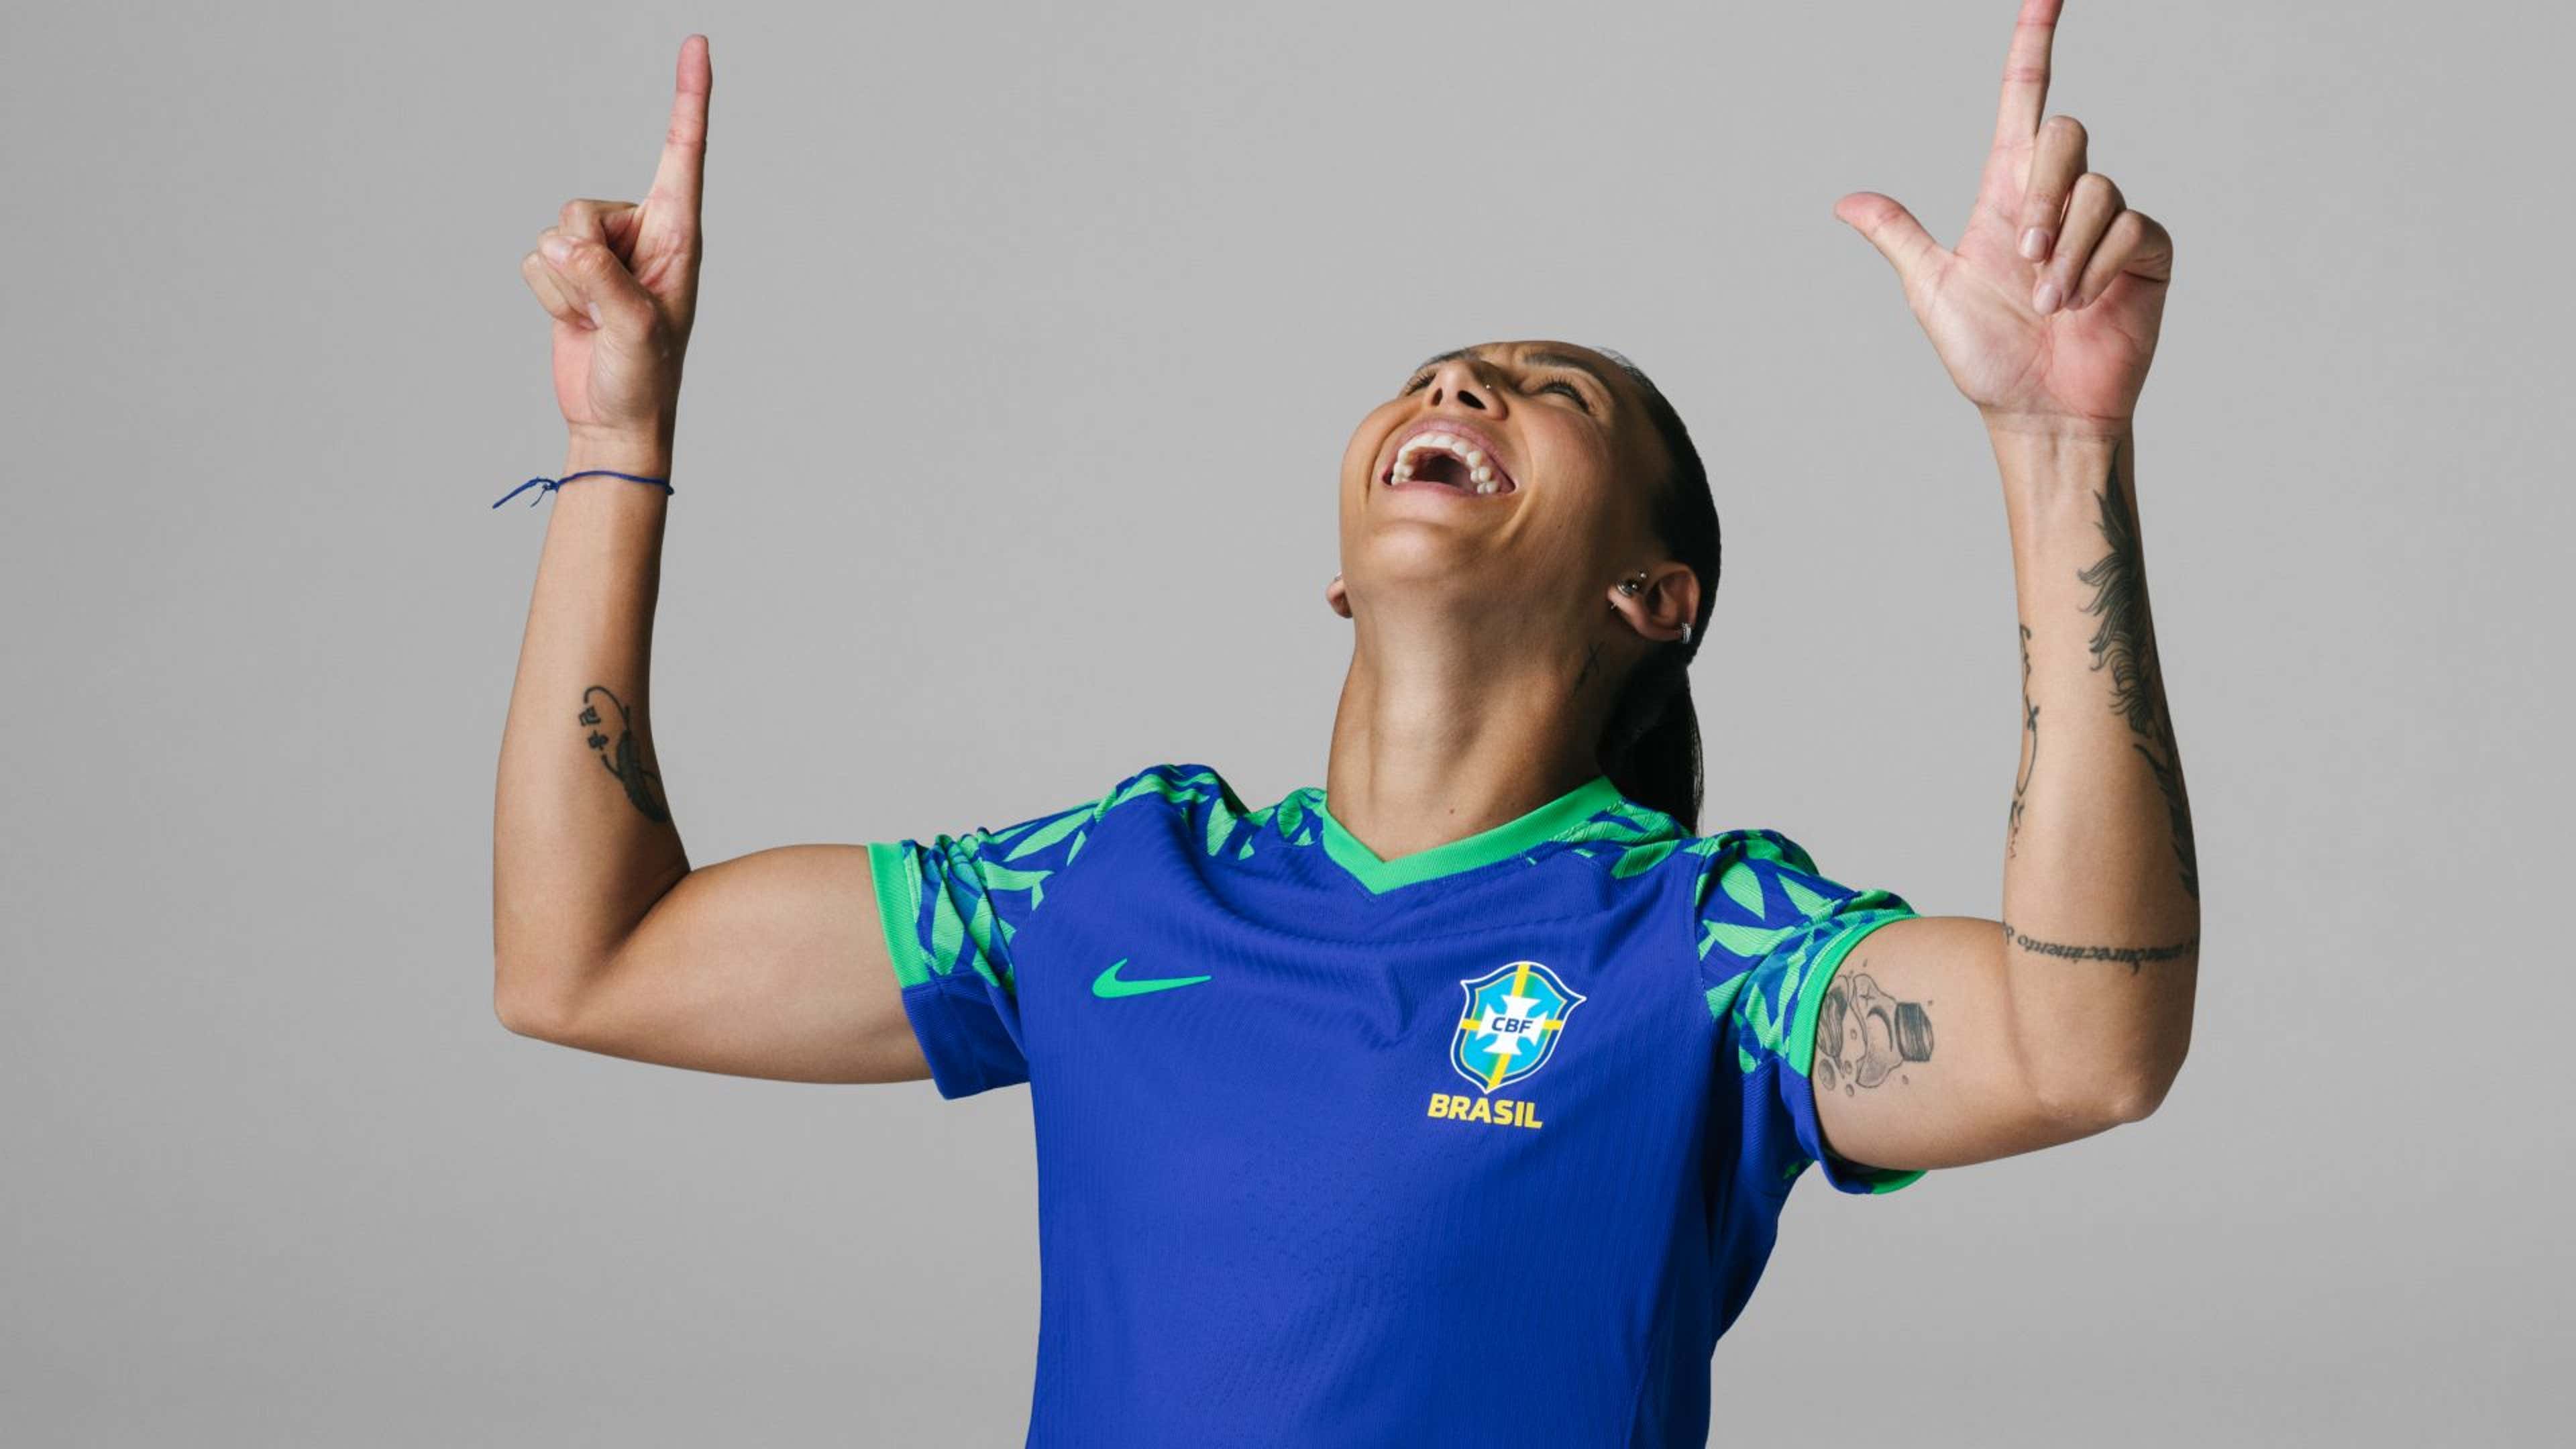 Camiseta Brasil Feminina Blusa Copa 2022 Seleção Brasileira no Shoptime